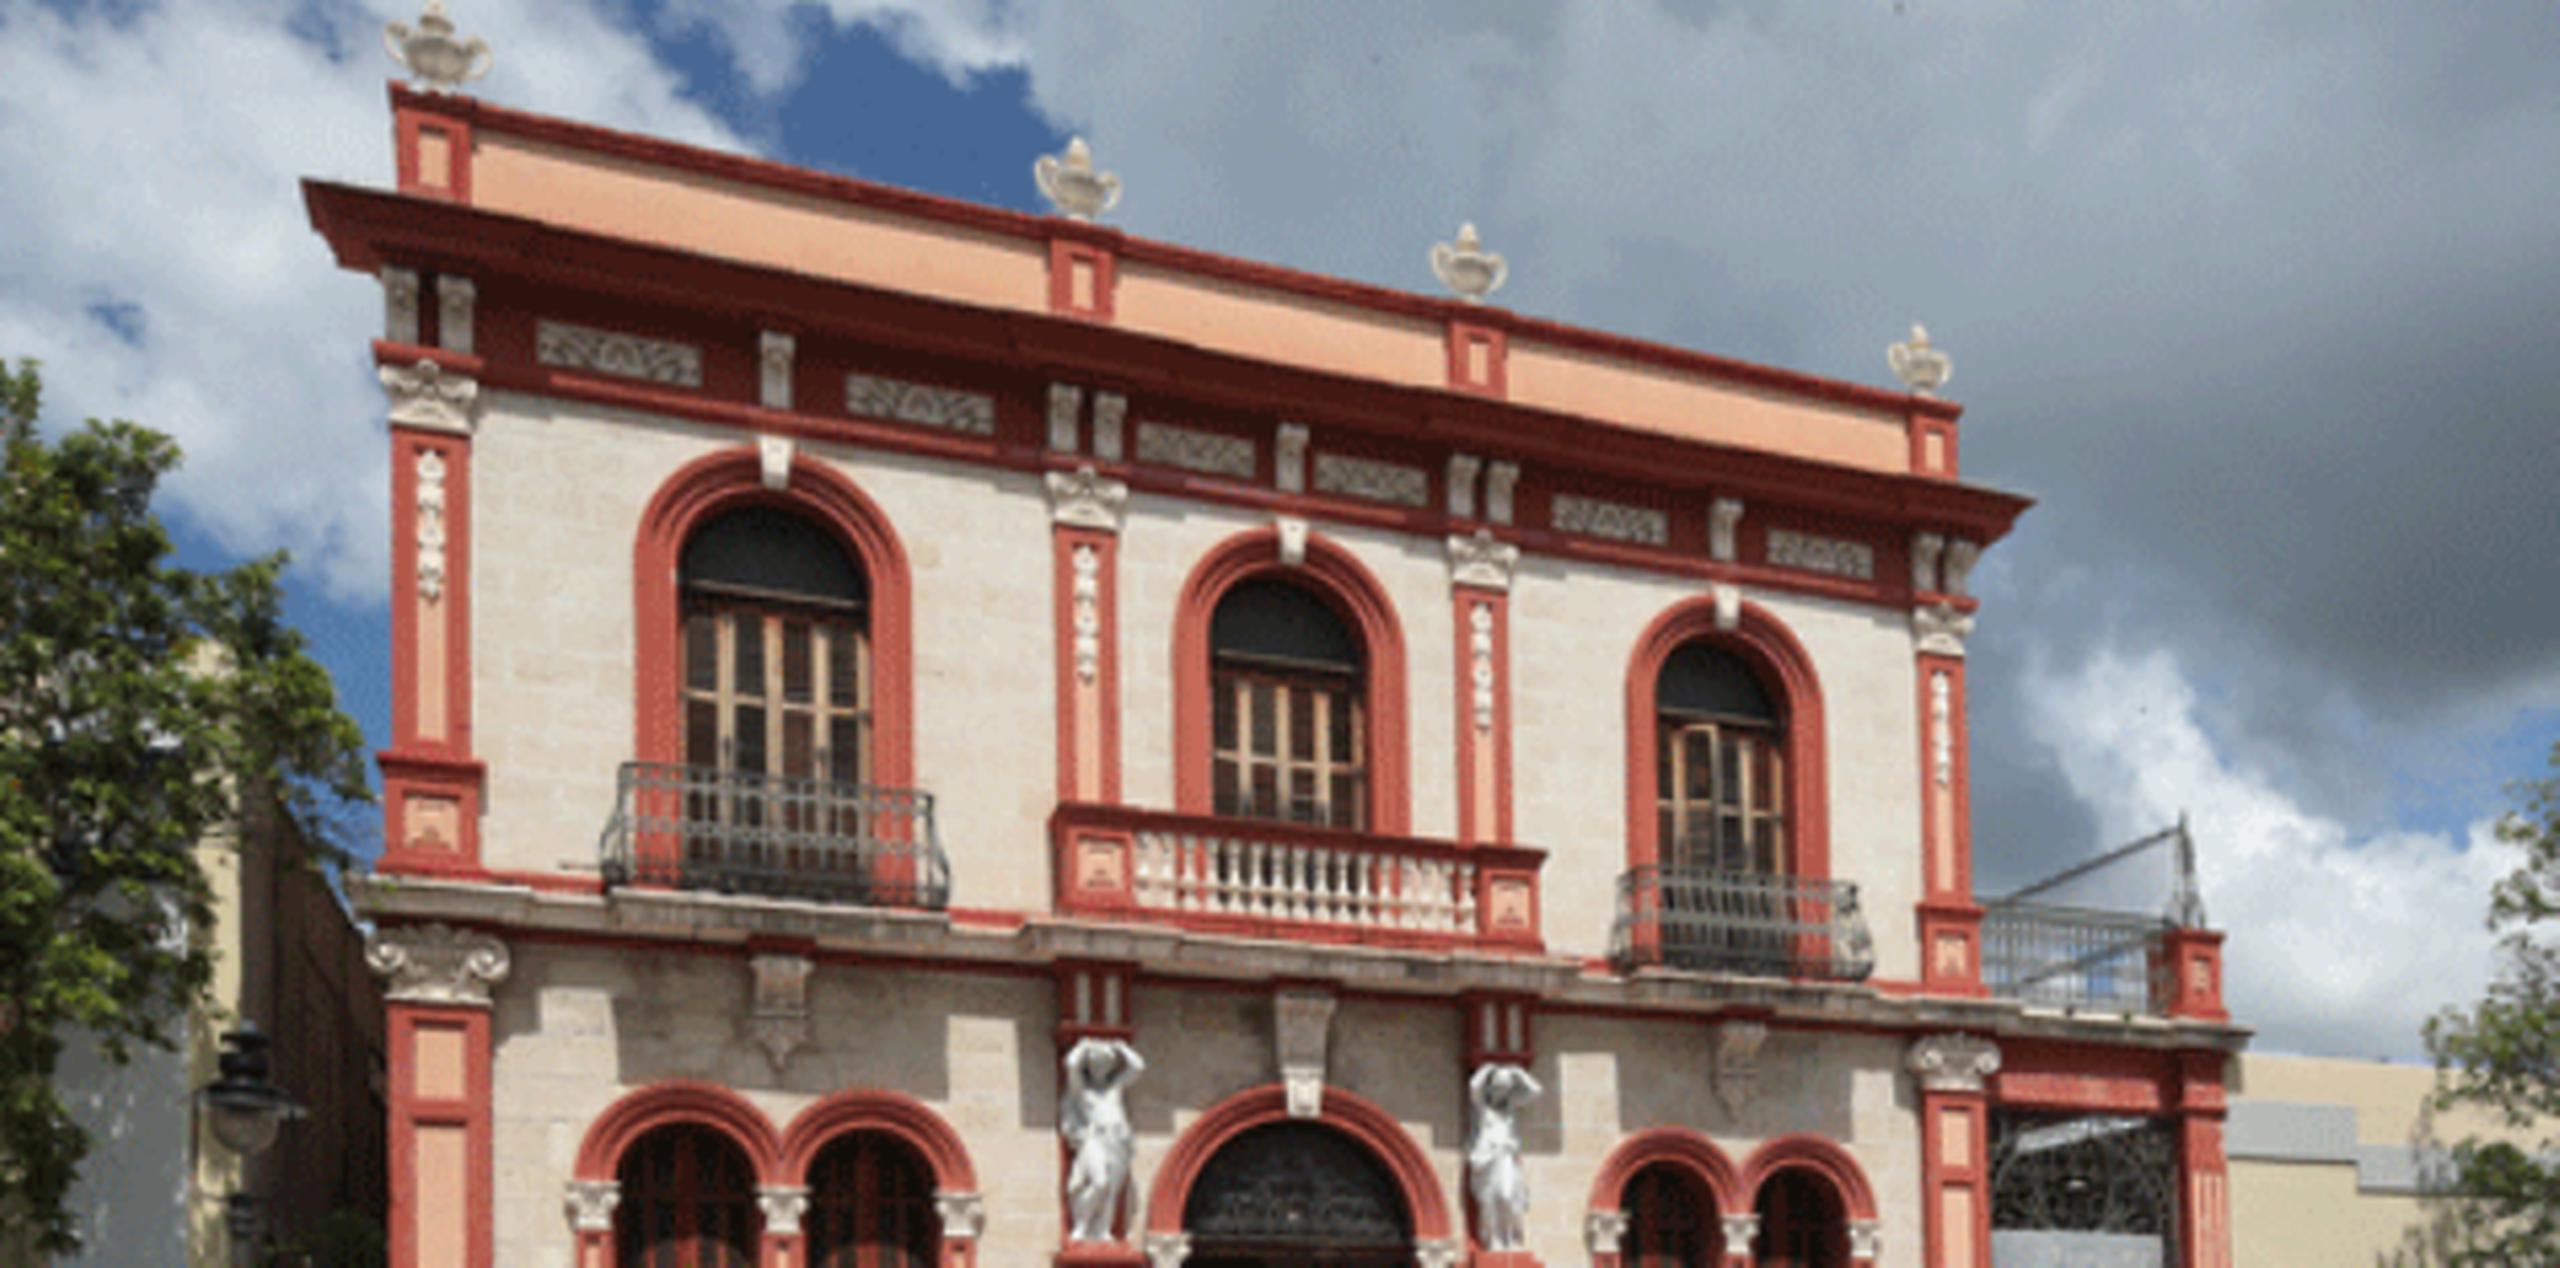 Casa Armstrong Poventud, actual sede del Instituto de Cultura en Ponce (ARCHIVO)